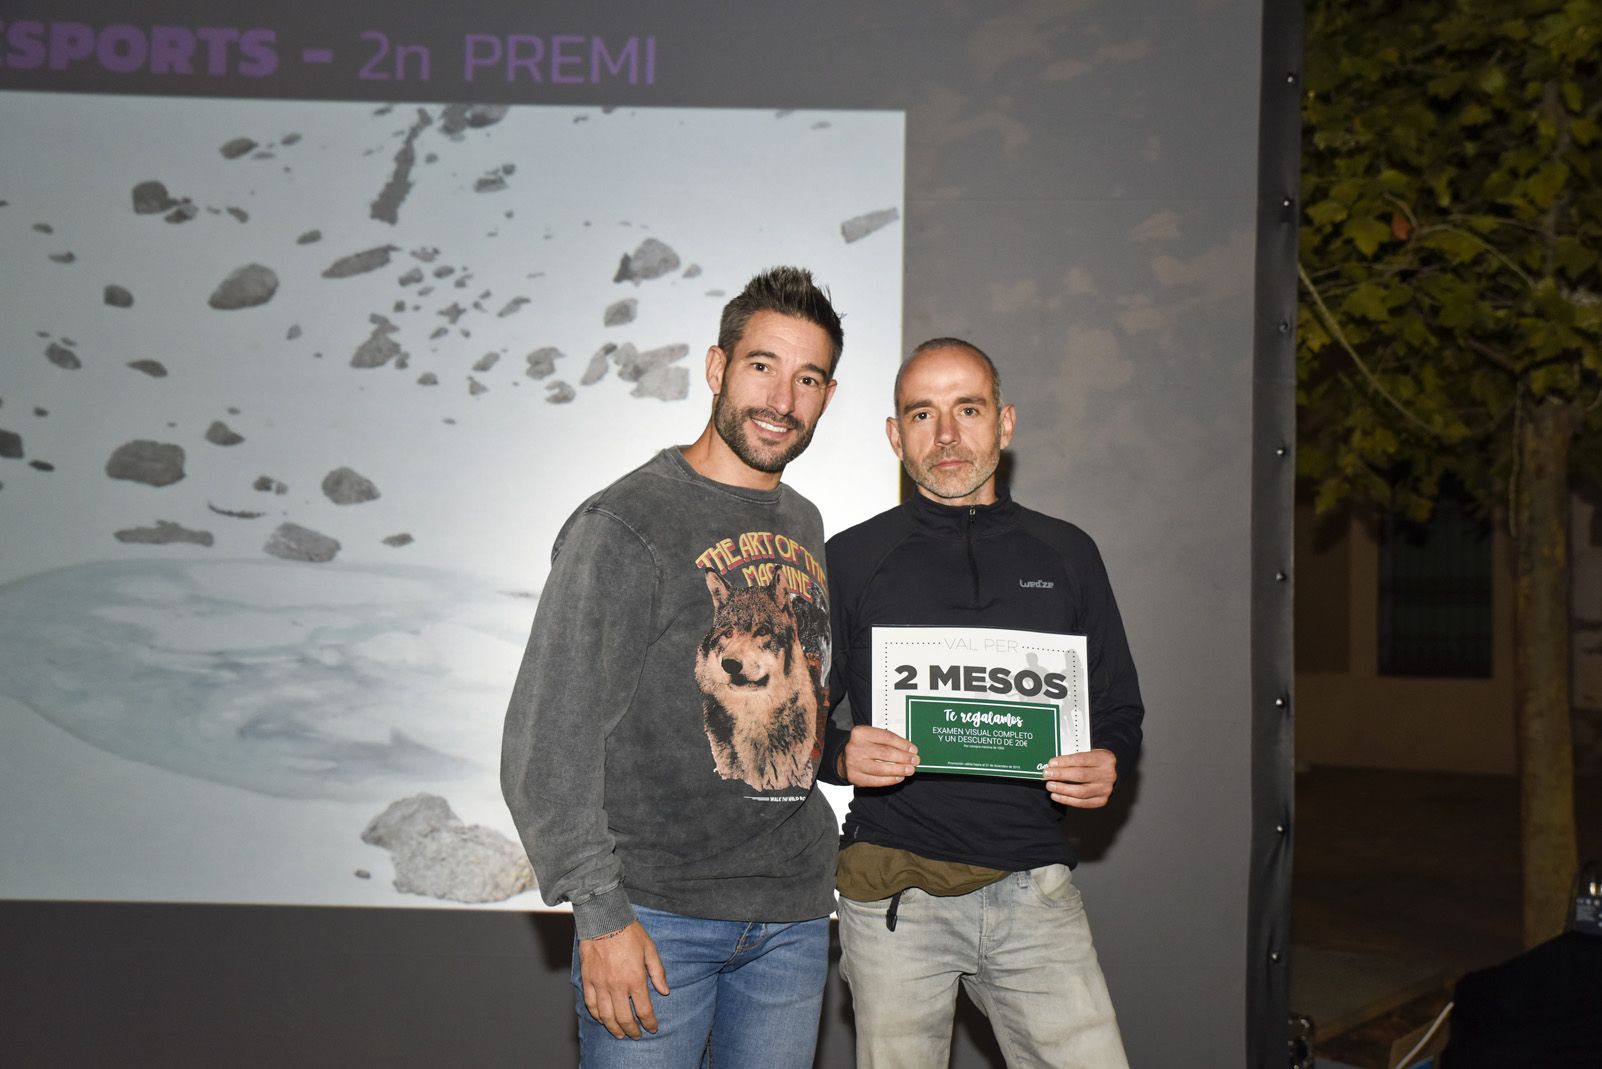 2on premi ‘Esports’ Carles Claraco Anguera - Trescant entre gel i neu als peus del Monte Perdido. Foto: Bernat Millet.